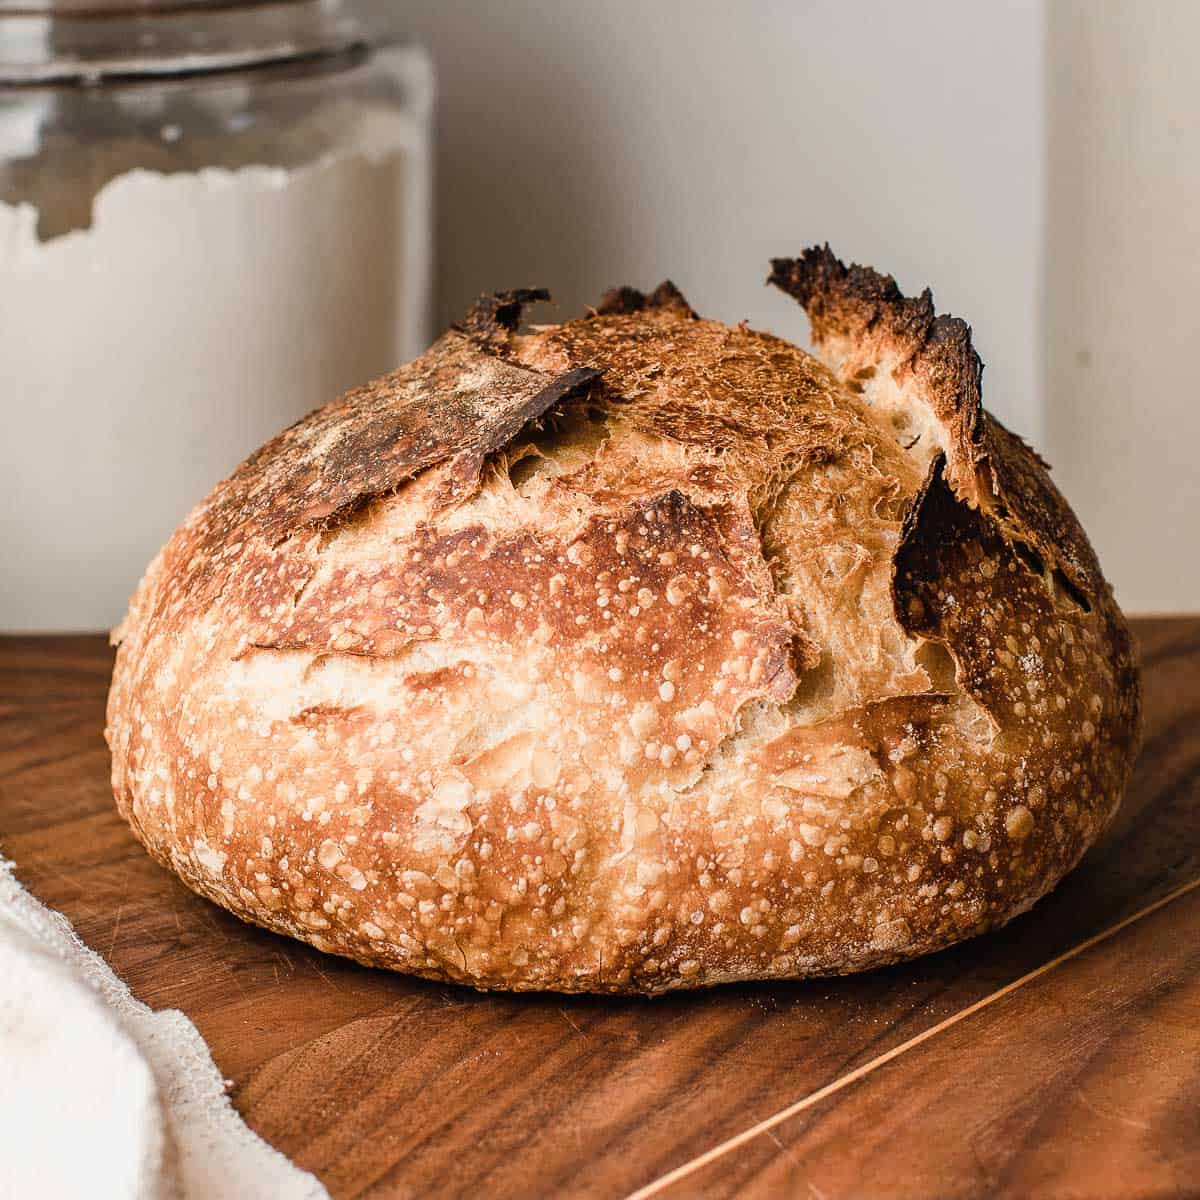 10-nutrition-facts-sourdough-bread